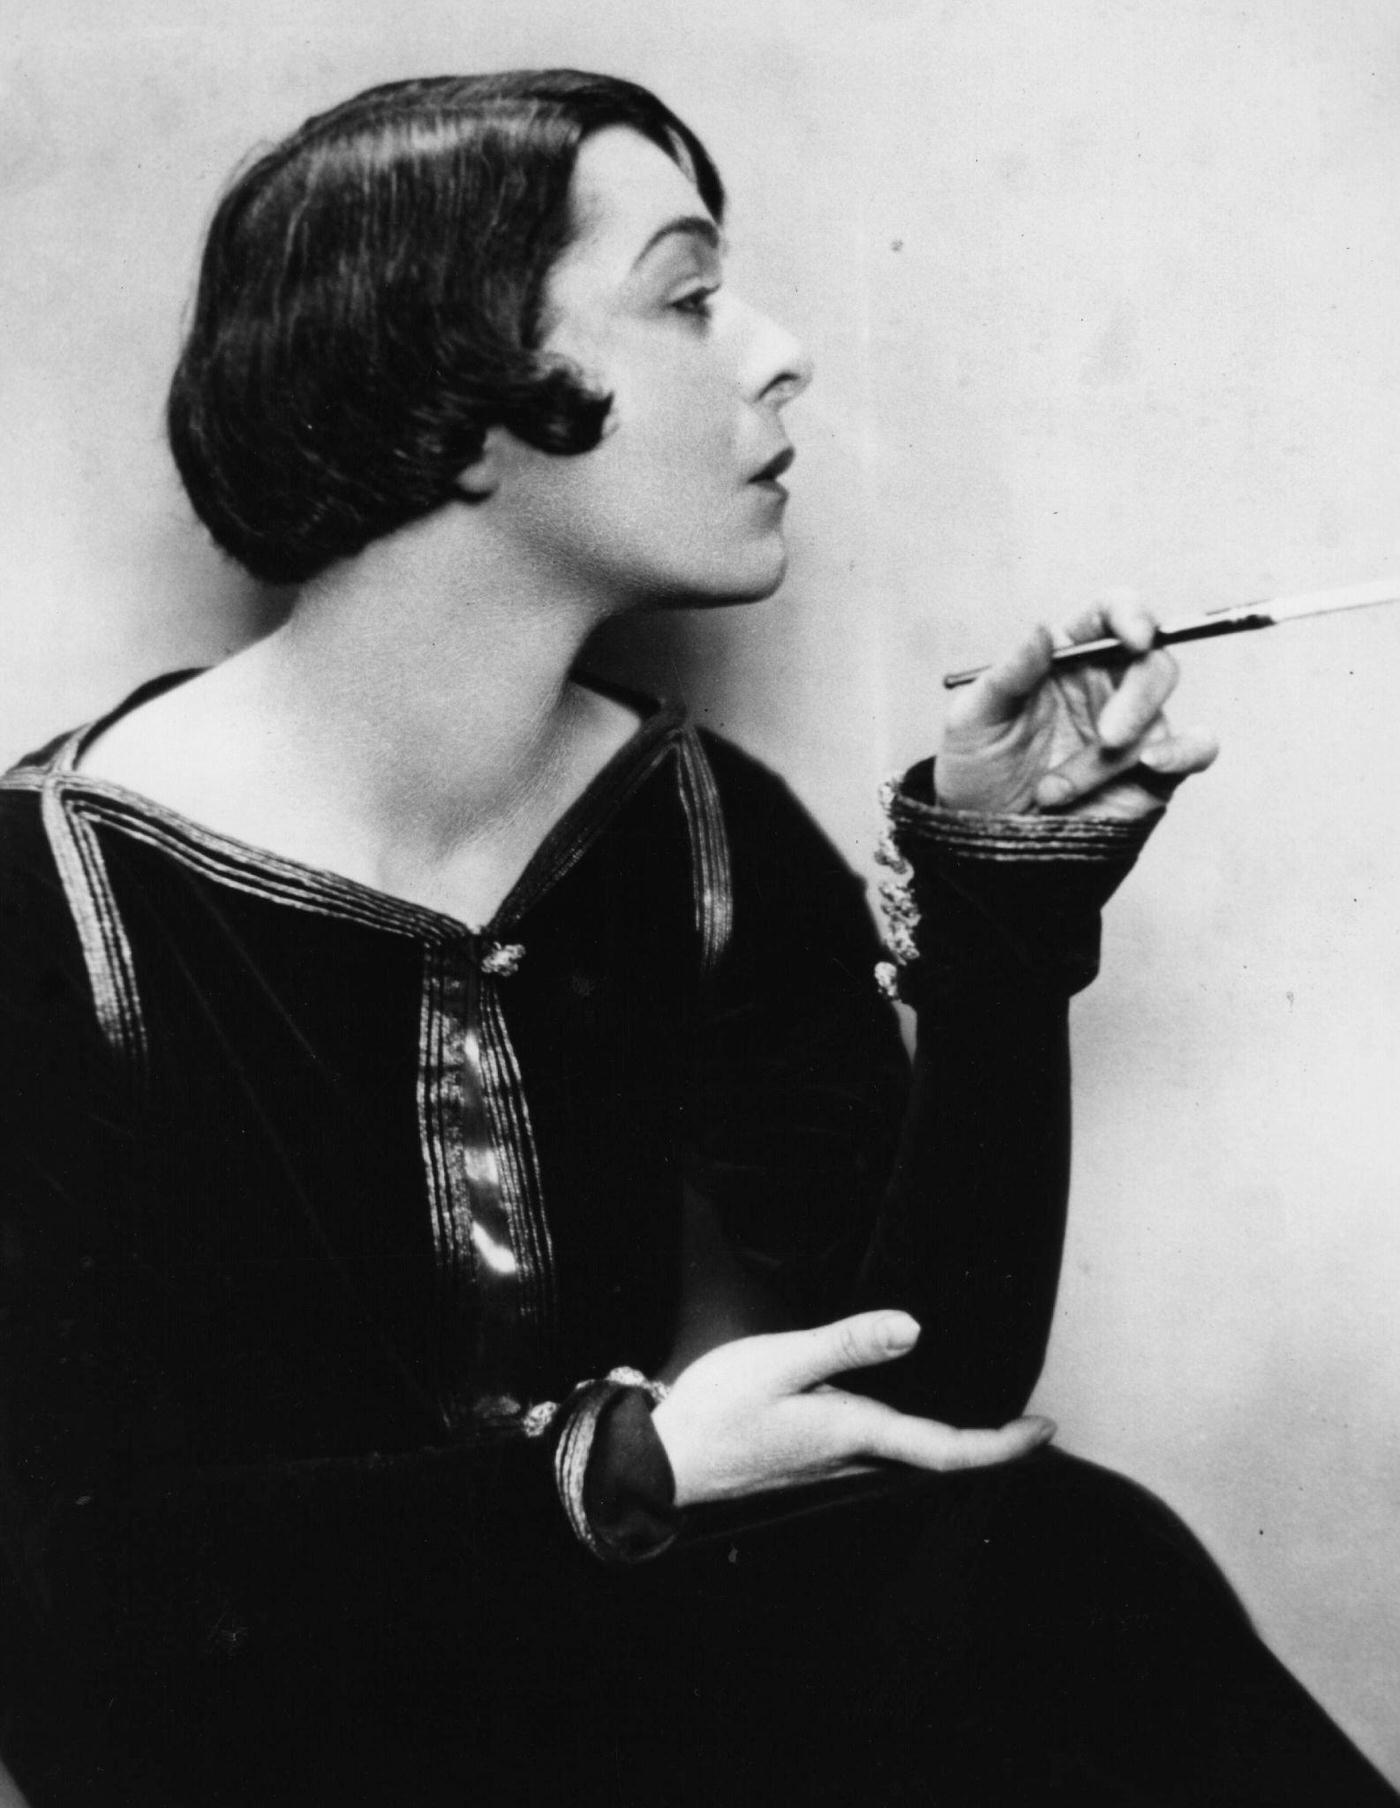 Alla Nazimova, Russian-Born Hollywood Star, Embracing Cigarettes in America